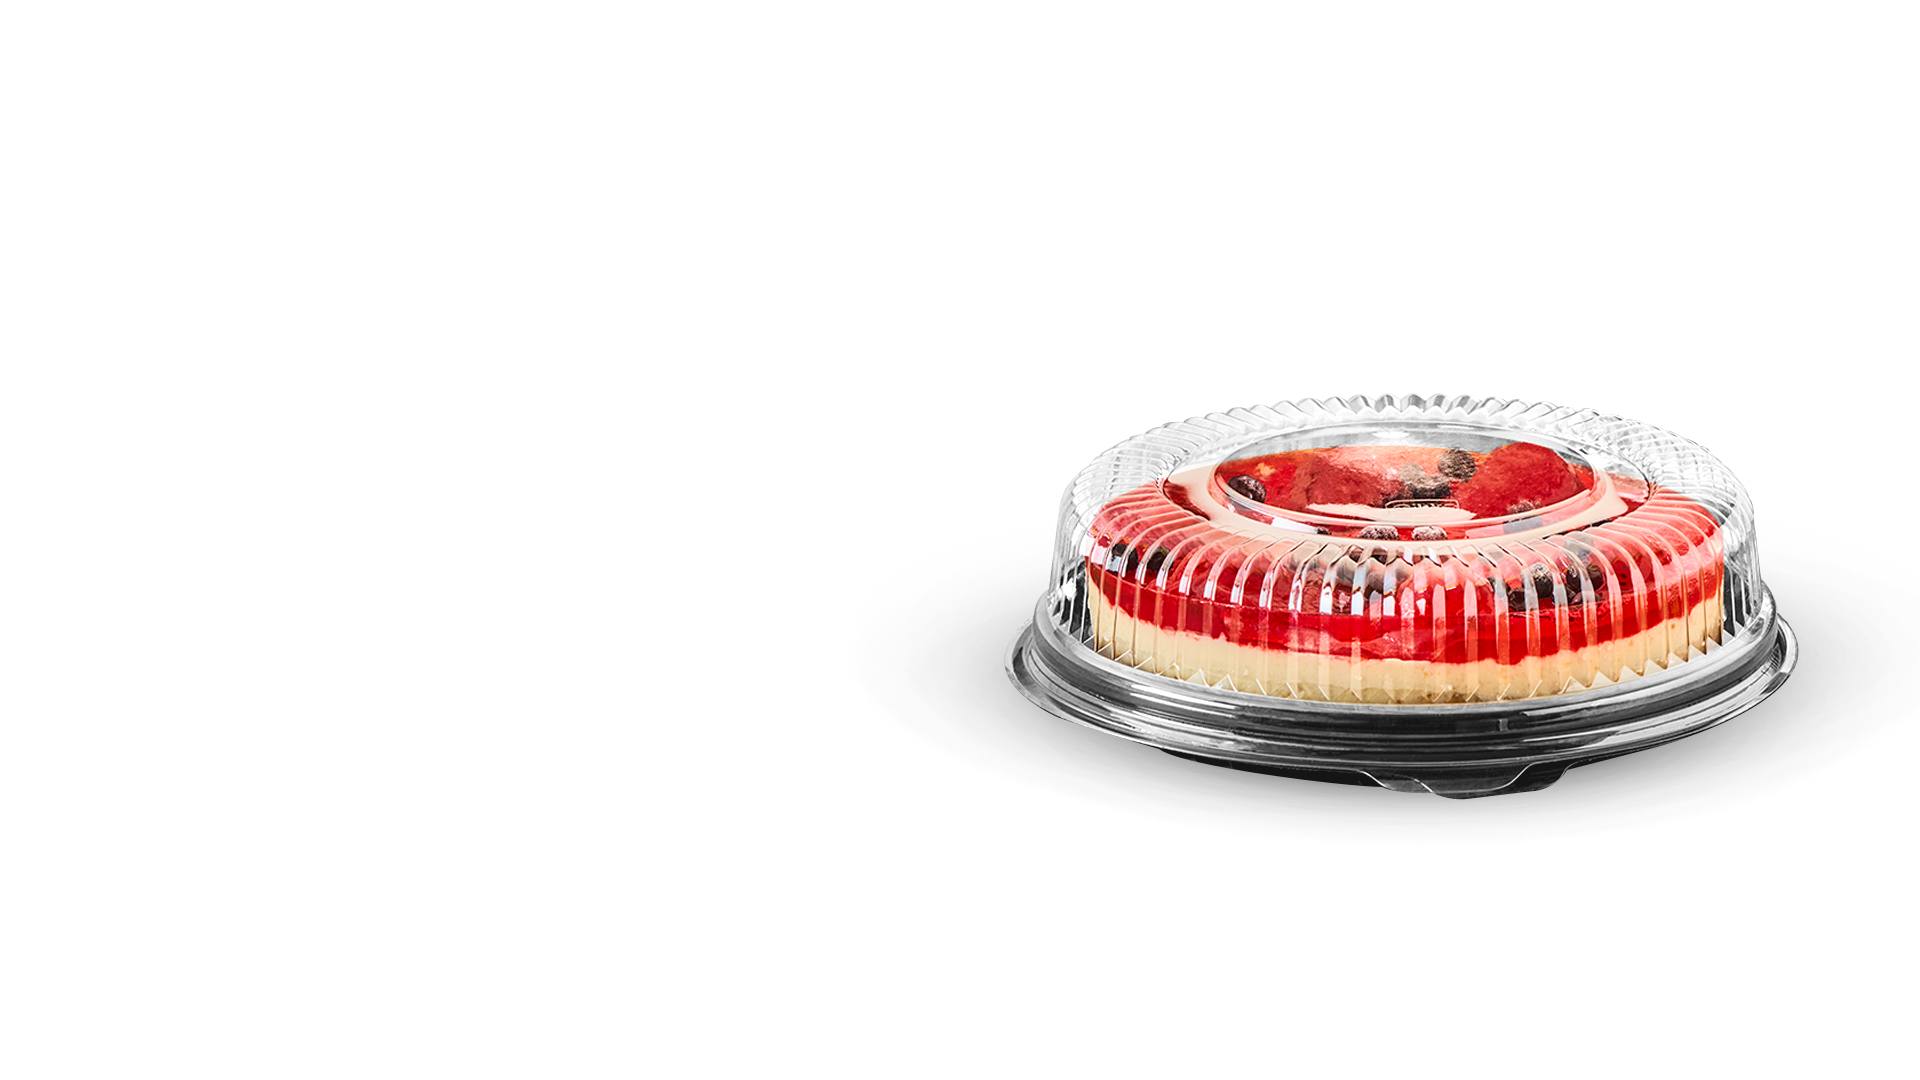 resq® Round Cake Domes